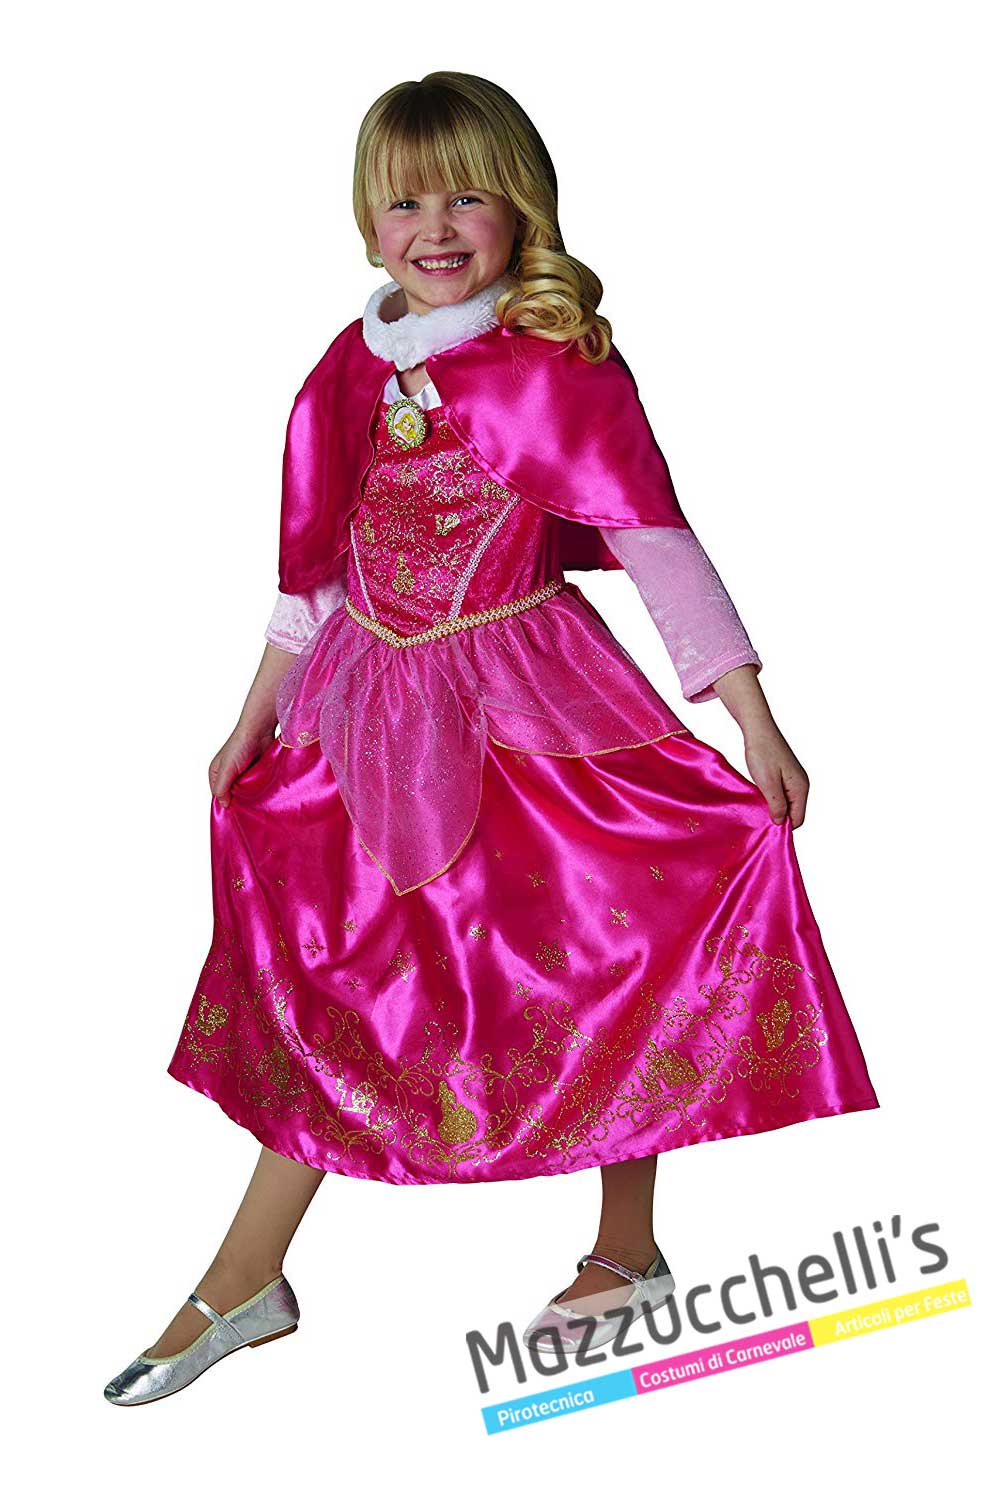 Costume Principessa Aurora in vendita a Samarate Varese da Mazzucchellis